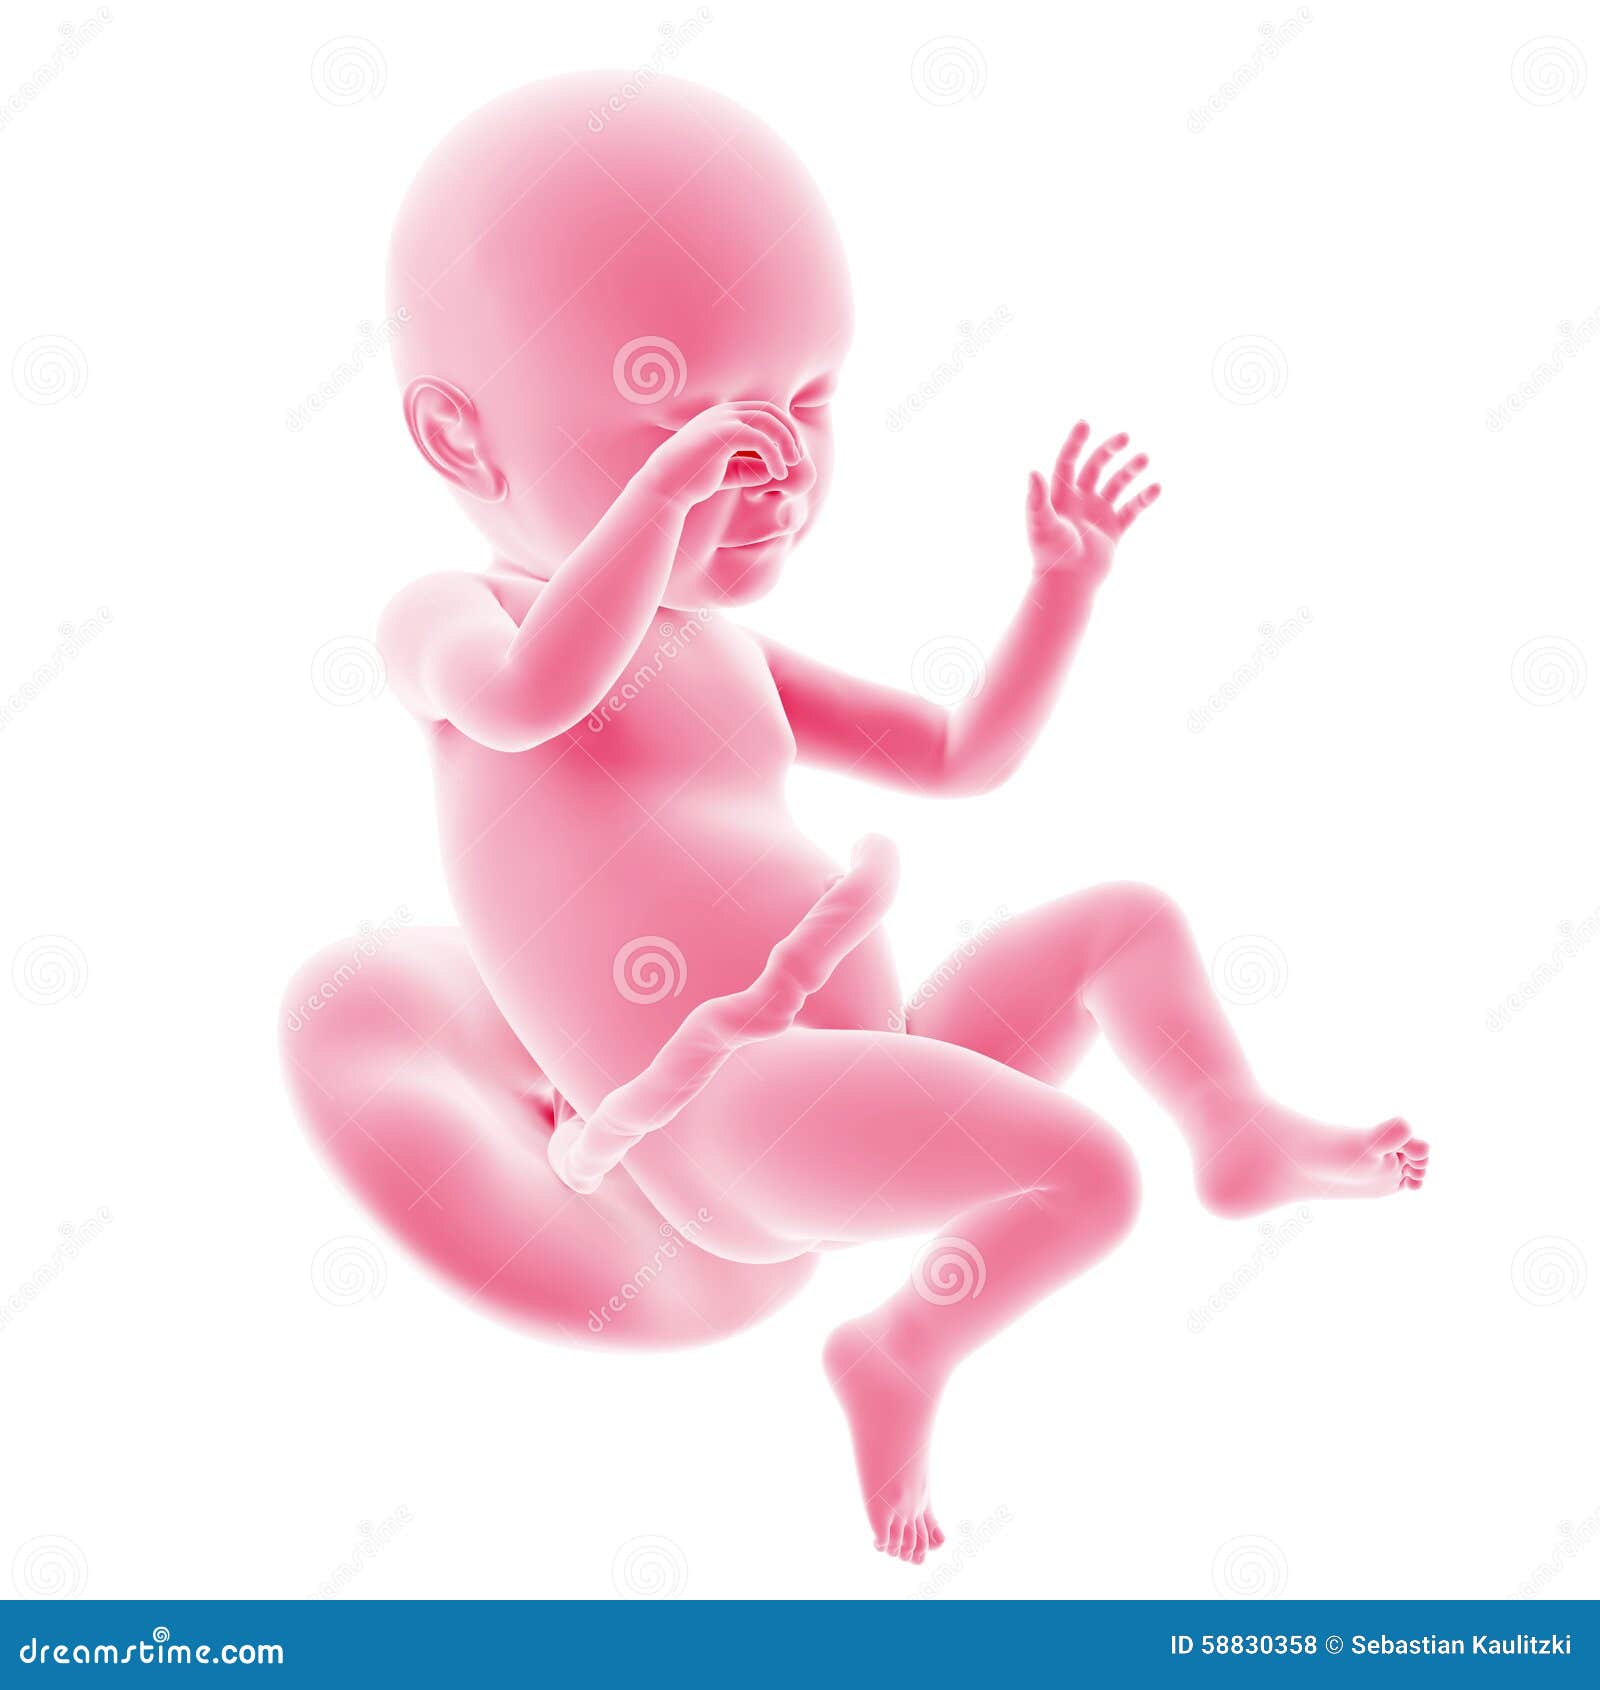 fetal development - week 39